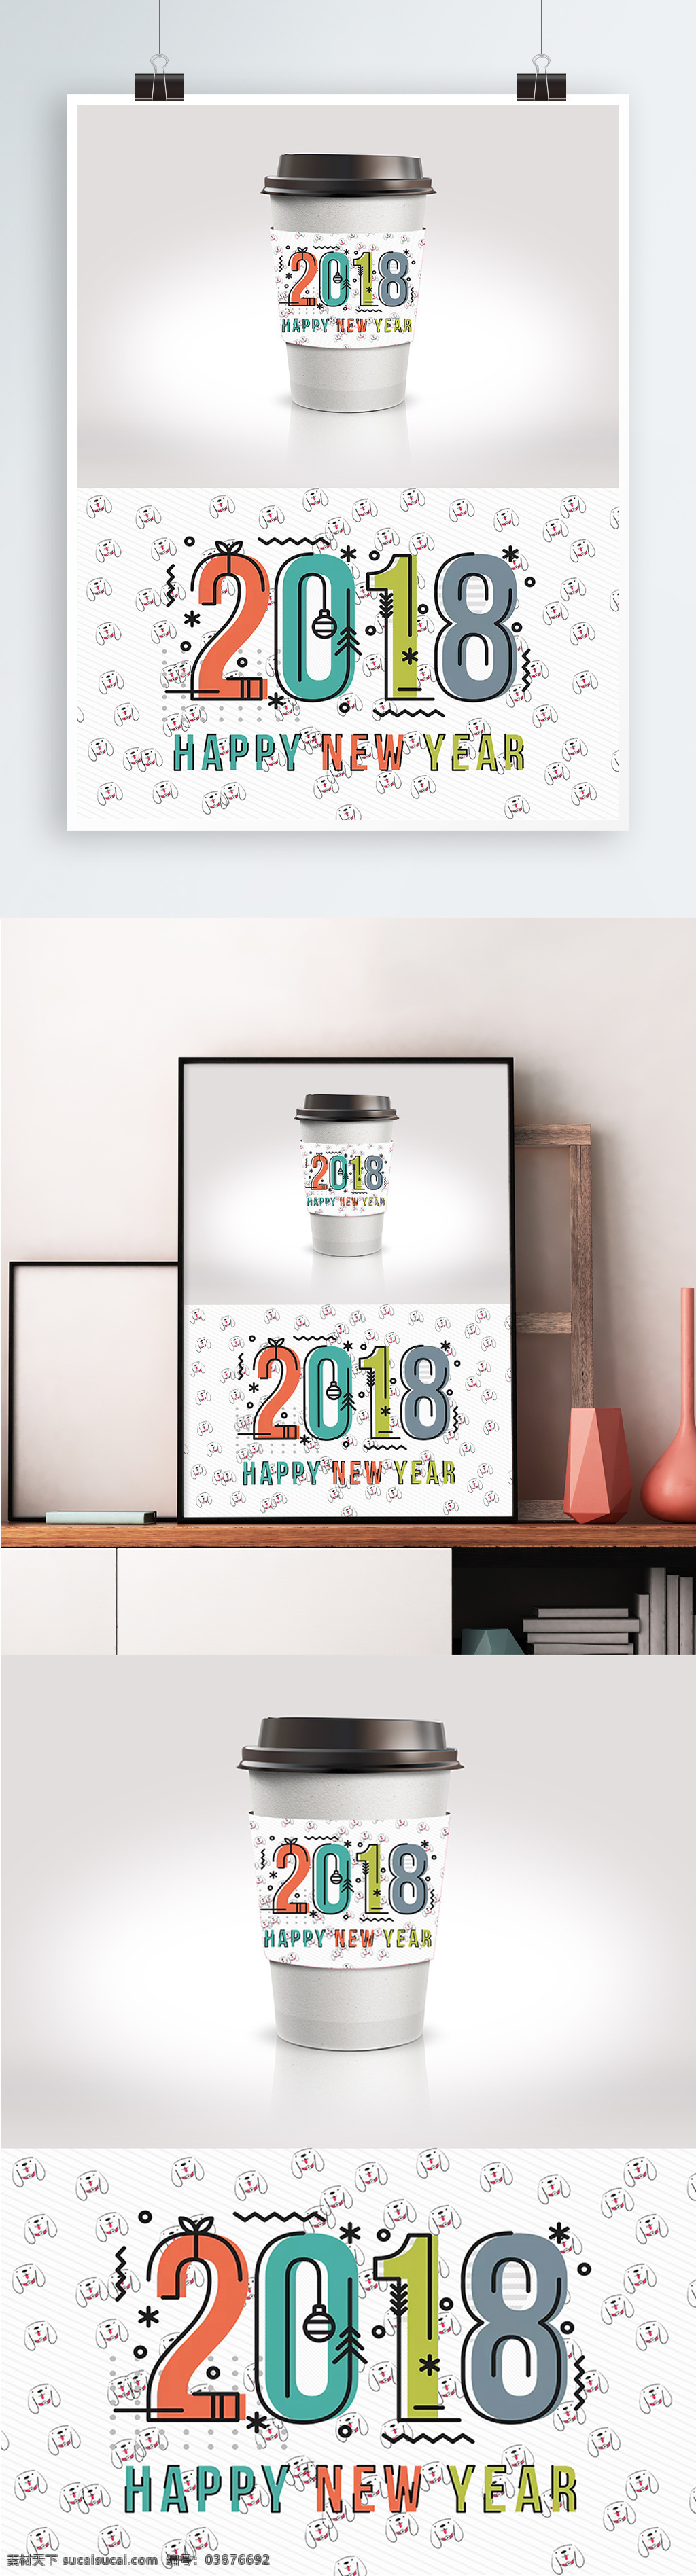 简约 新年 快乐 节日 包装 饮品 杯 套 2018年 psd素材 大气 节日包装 咖啡杯套 模版 小狗图案 新年快乐